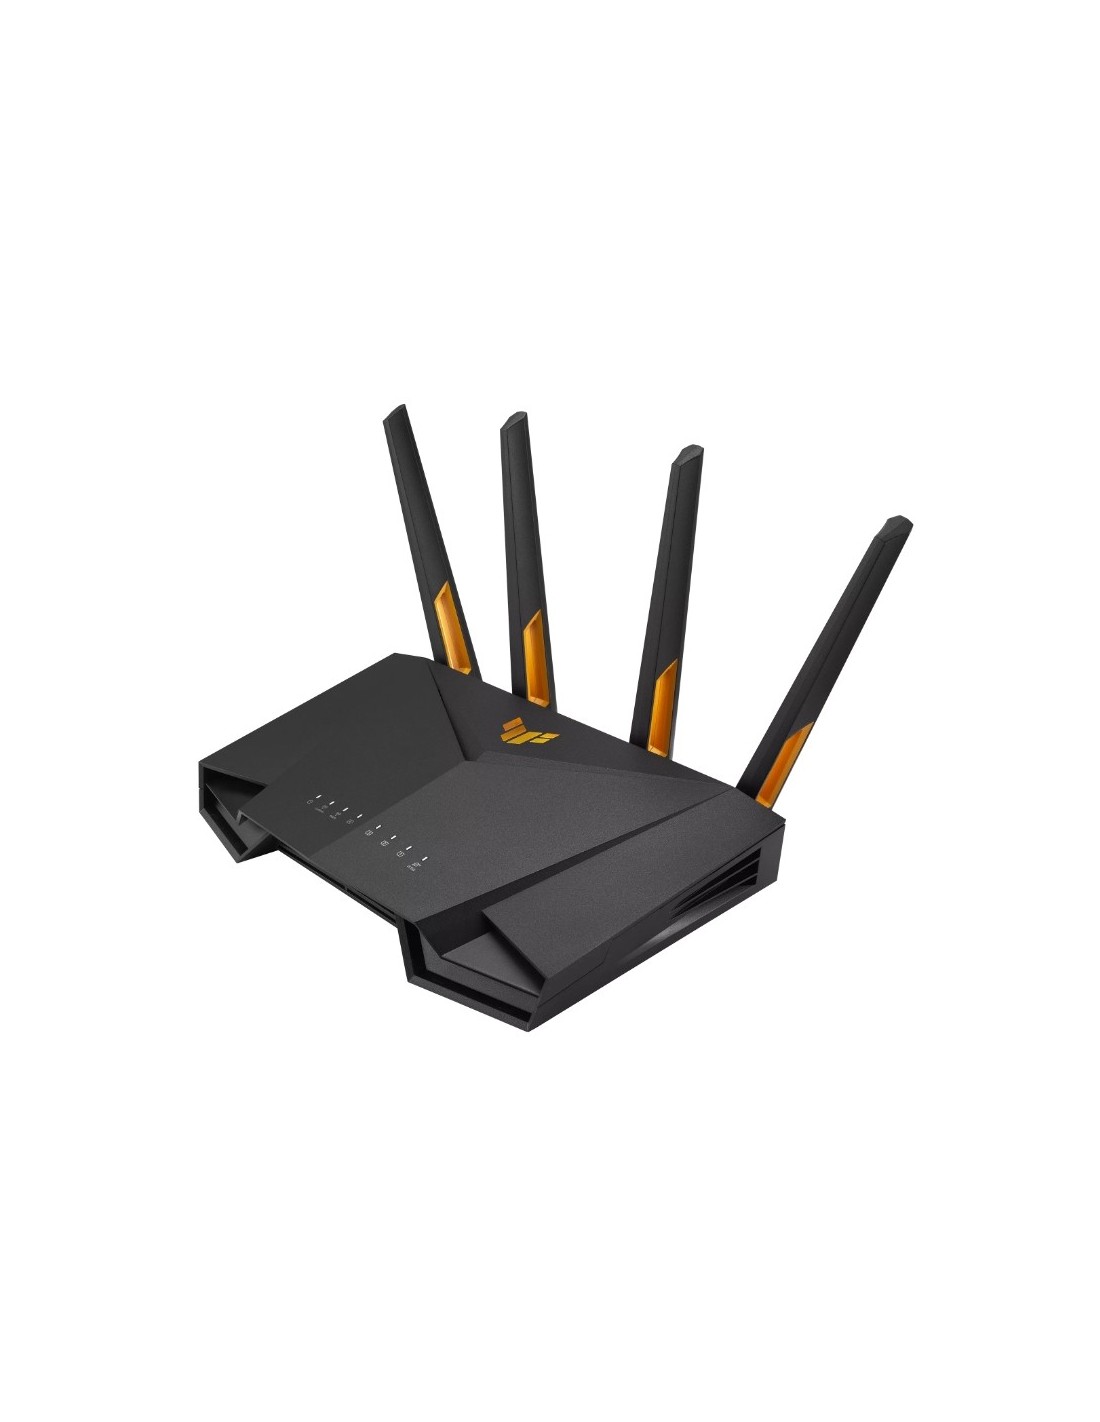 ASUS TUF-AX4200 AiMesh router inalámbrico Gigabit Ethernet D